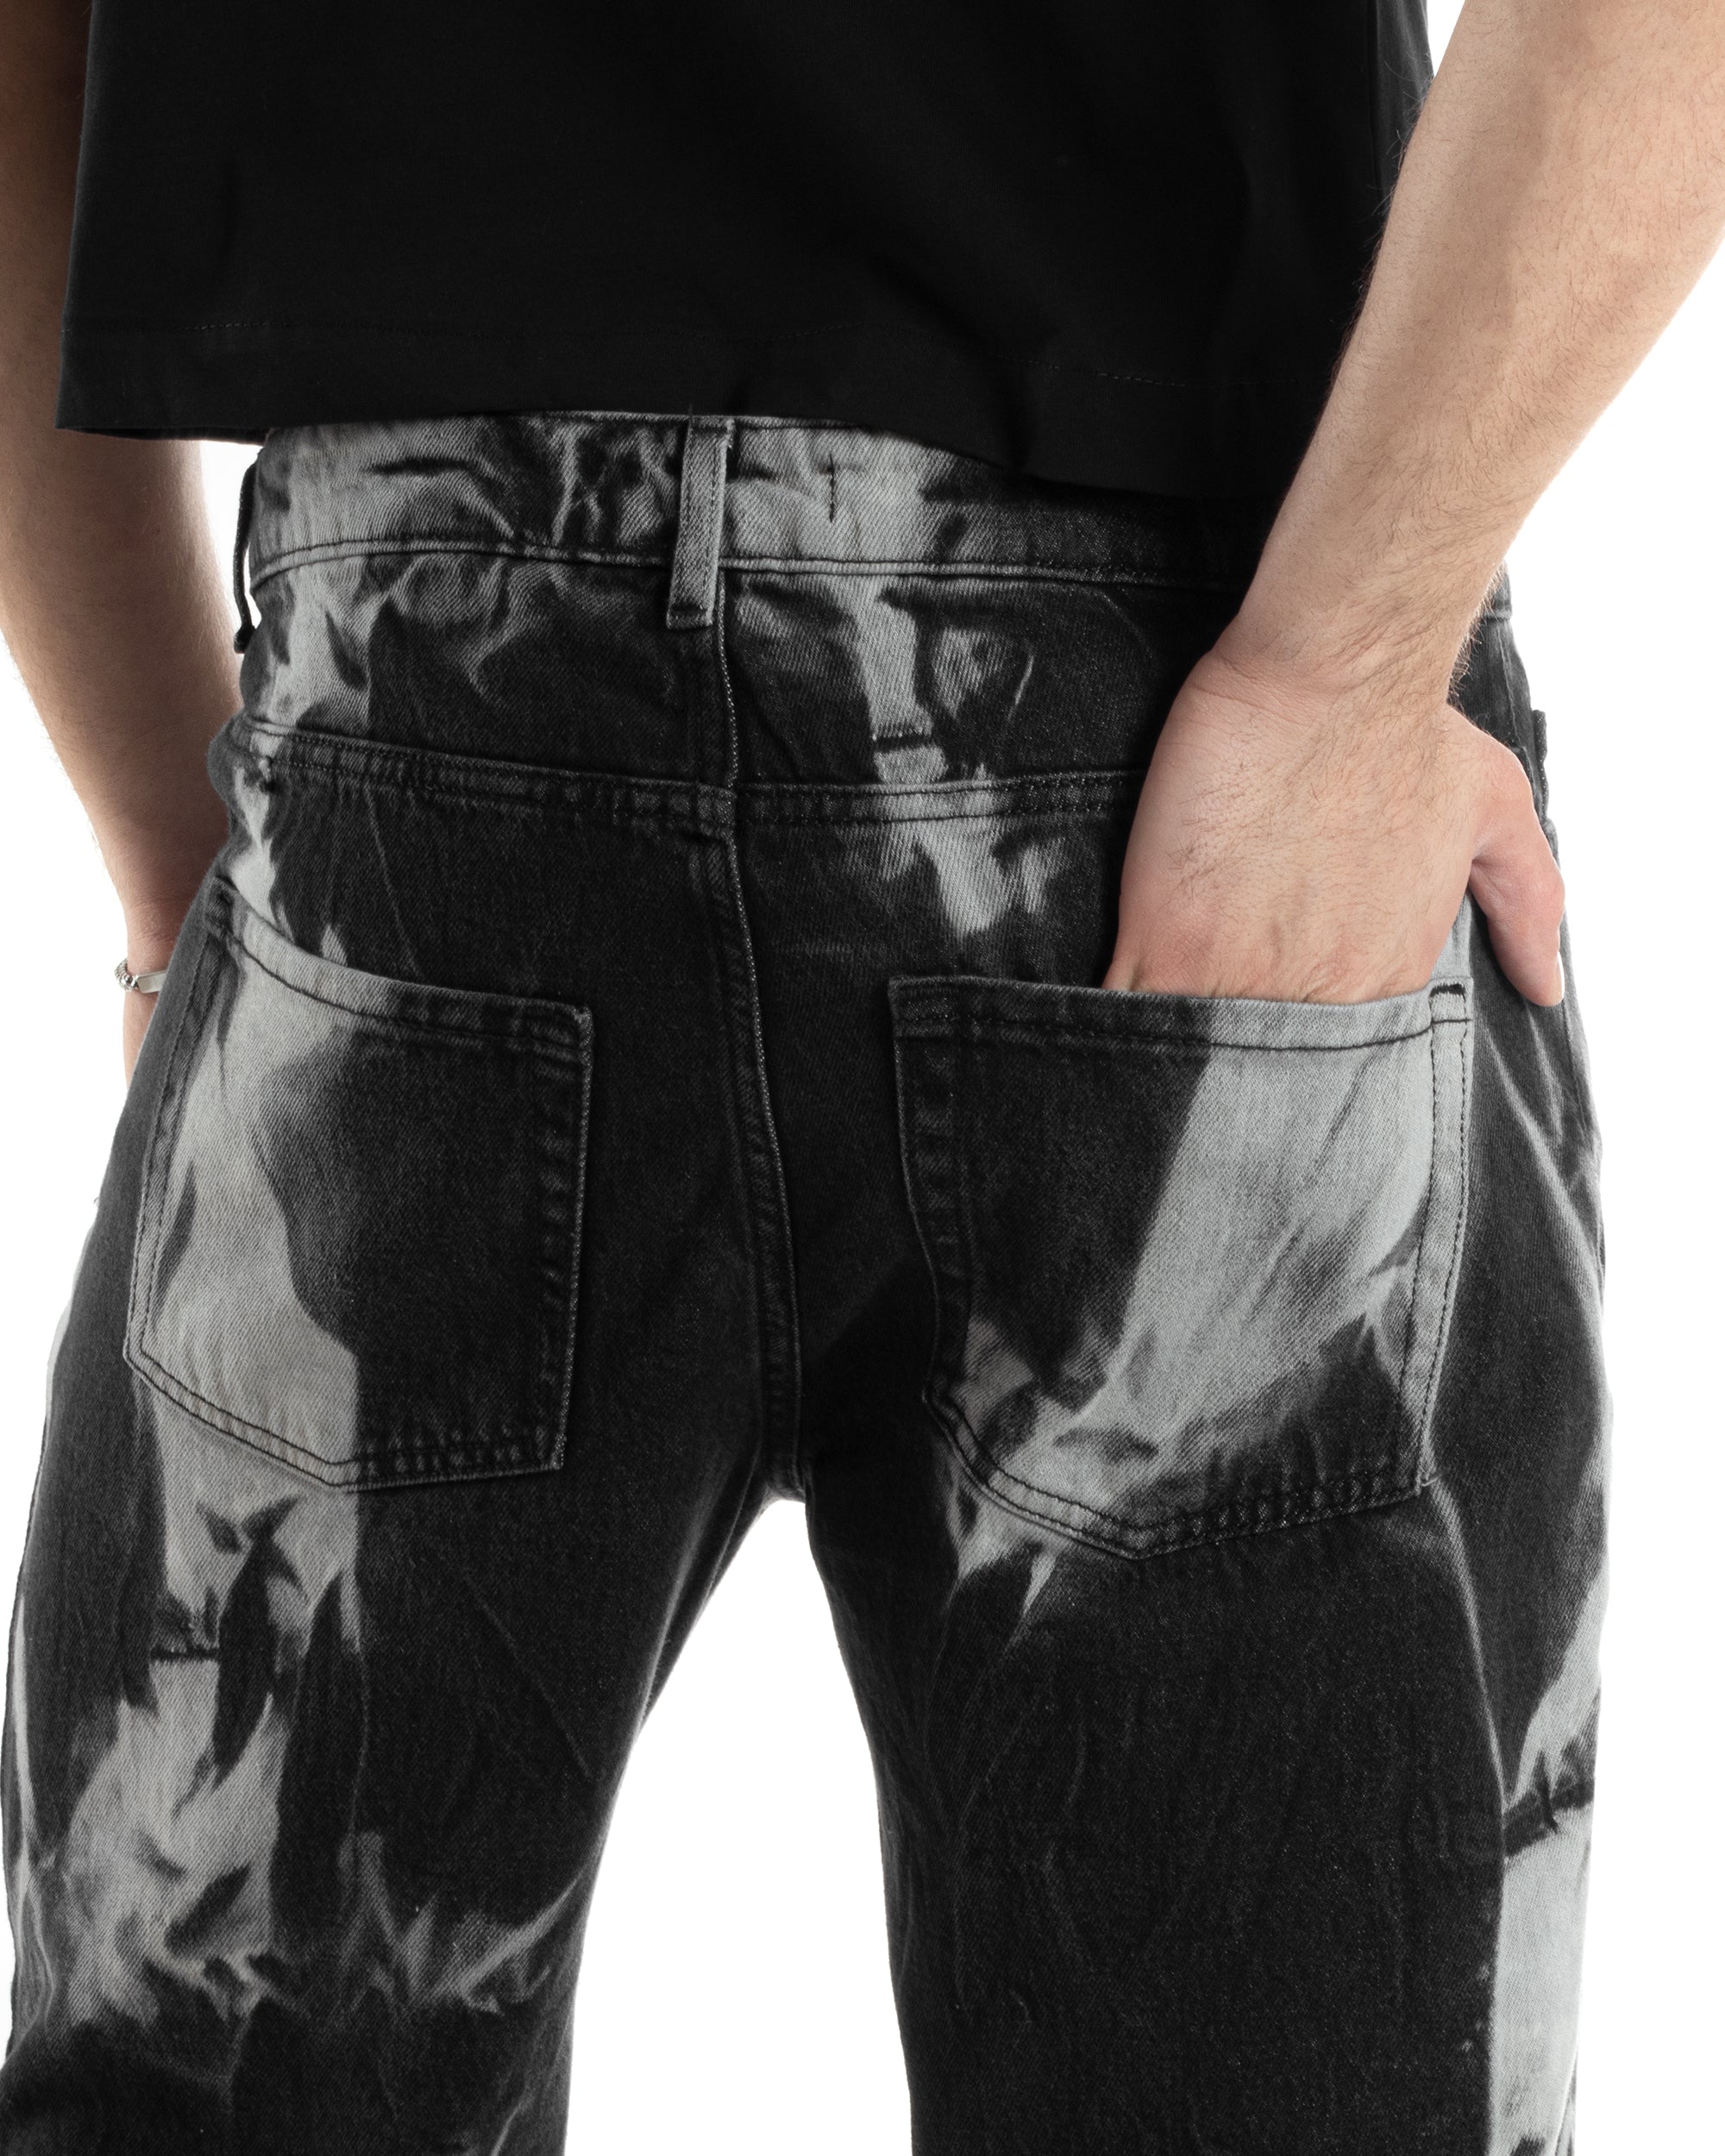 Pantaloni Jeans Uomo Baggy Fit Basic Nero Sfumato Tie-Dye GIOSAL-JS1013A